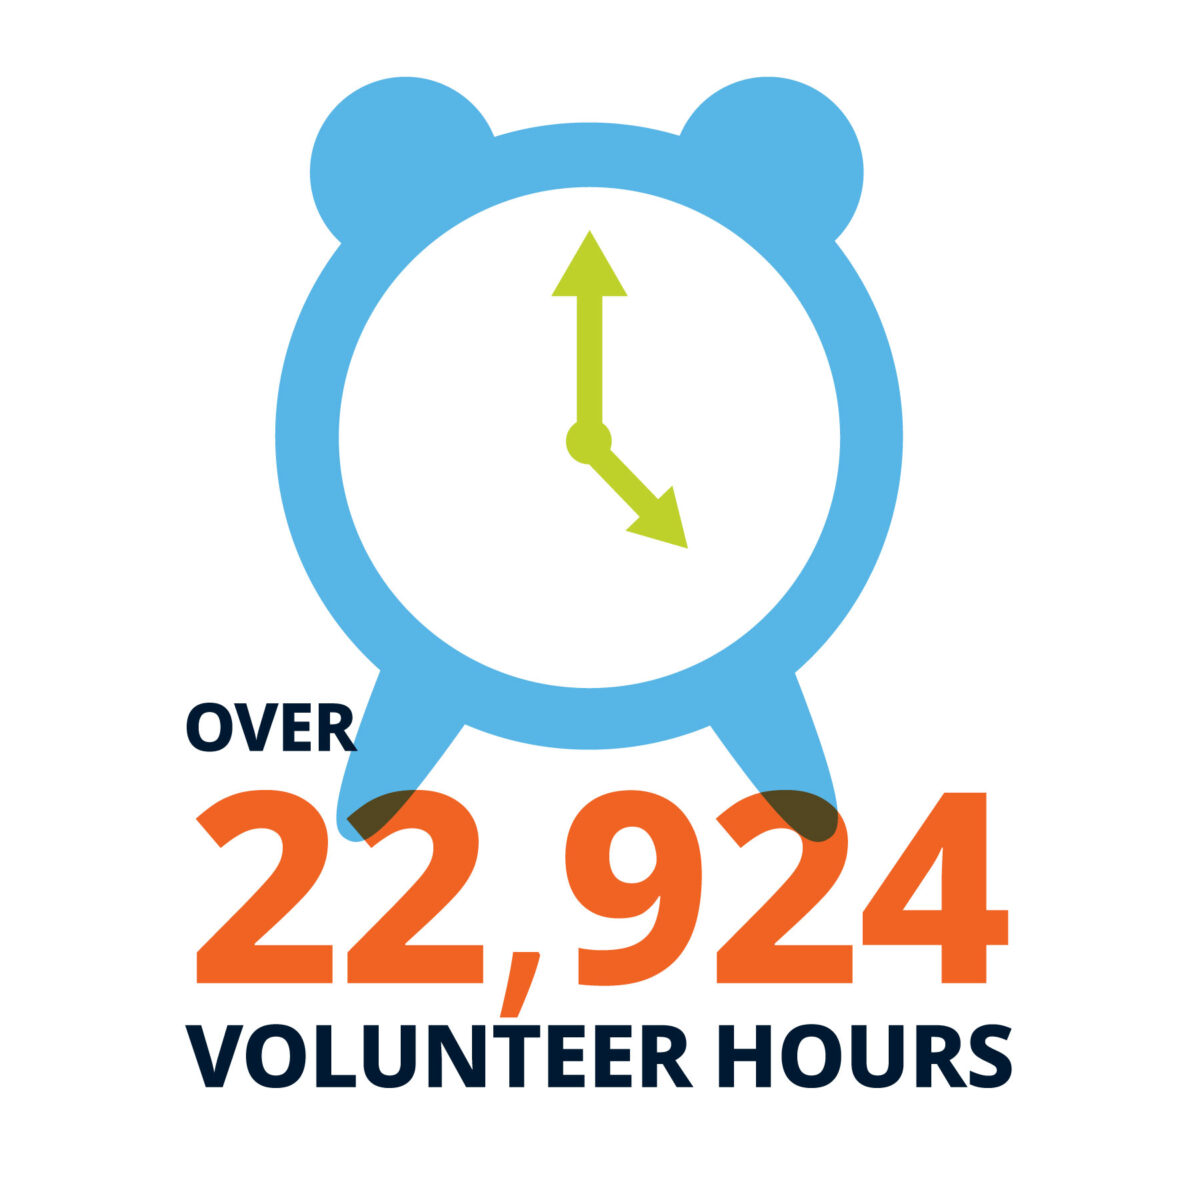 Over 22,924 volunteer hours.